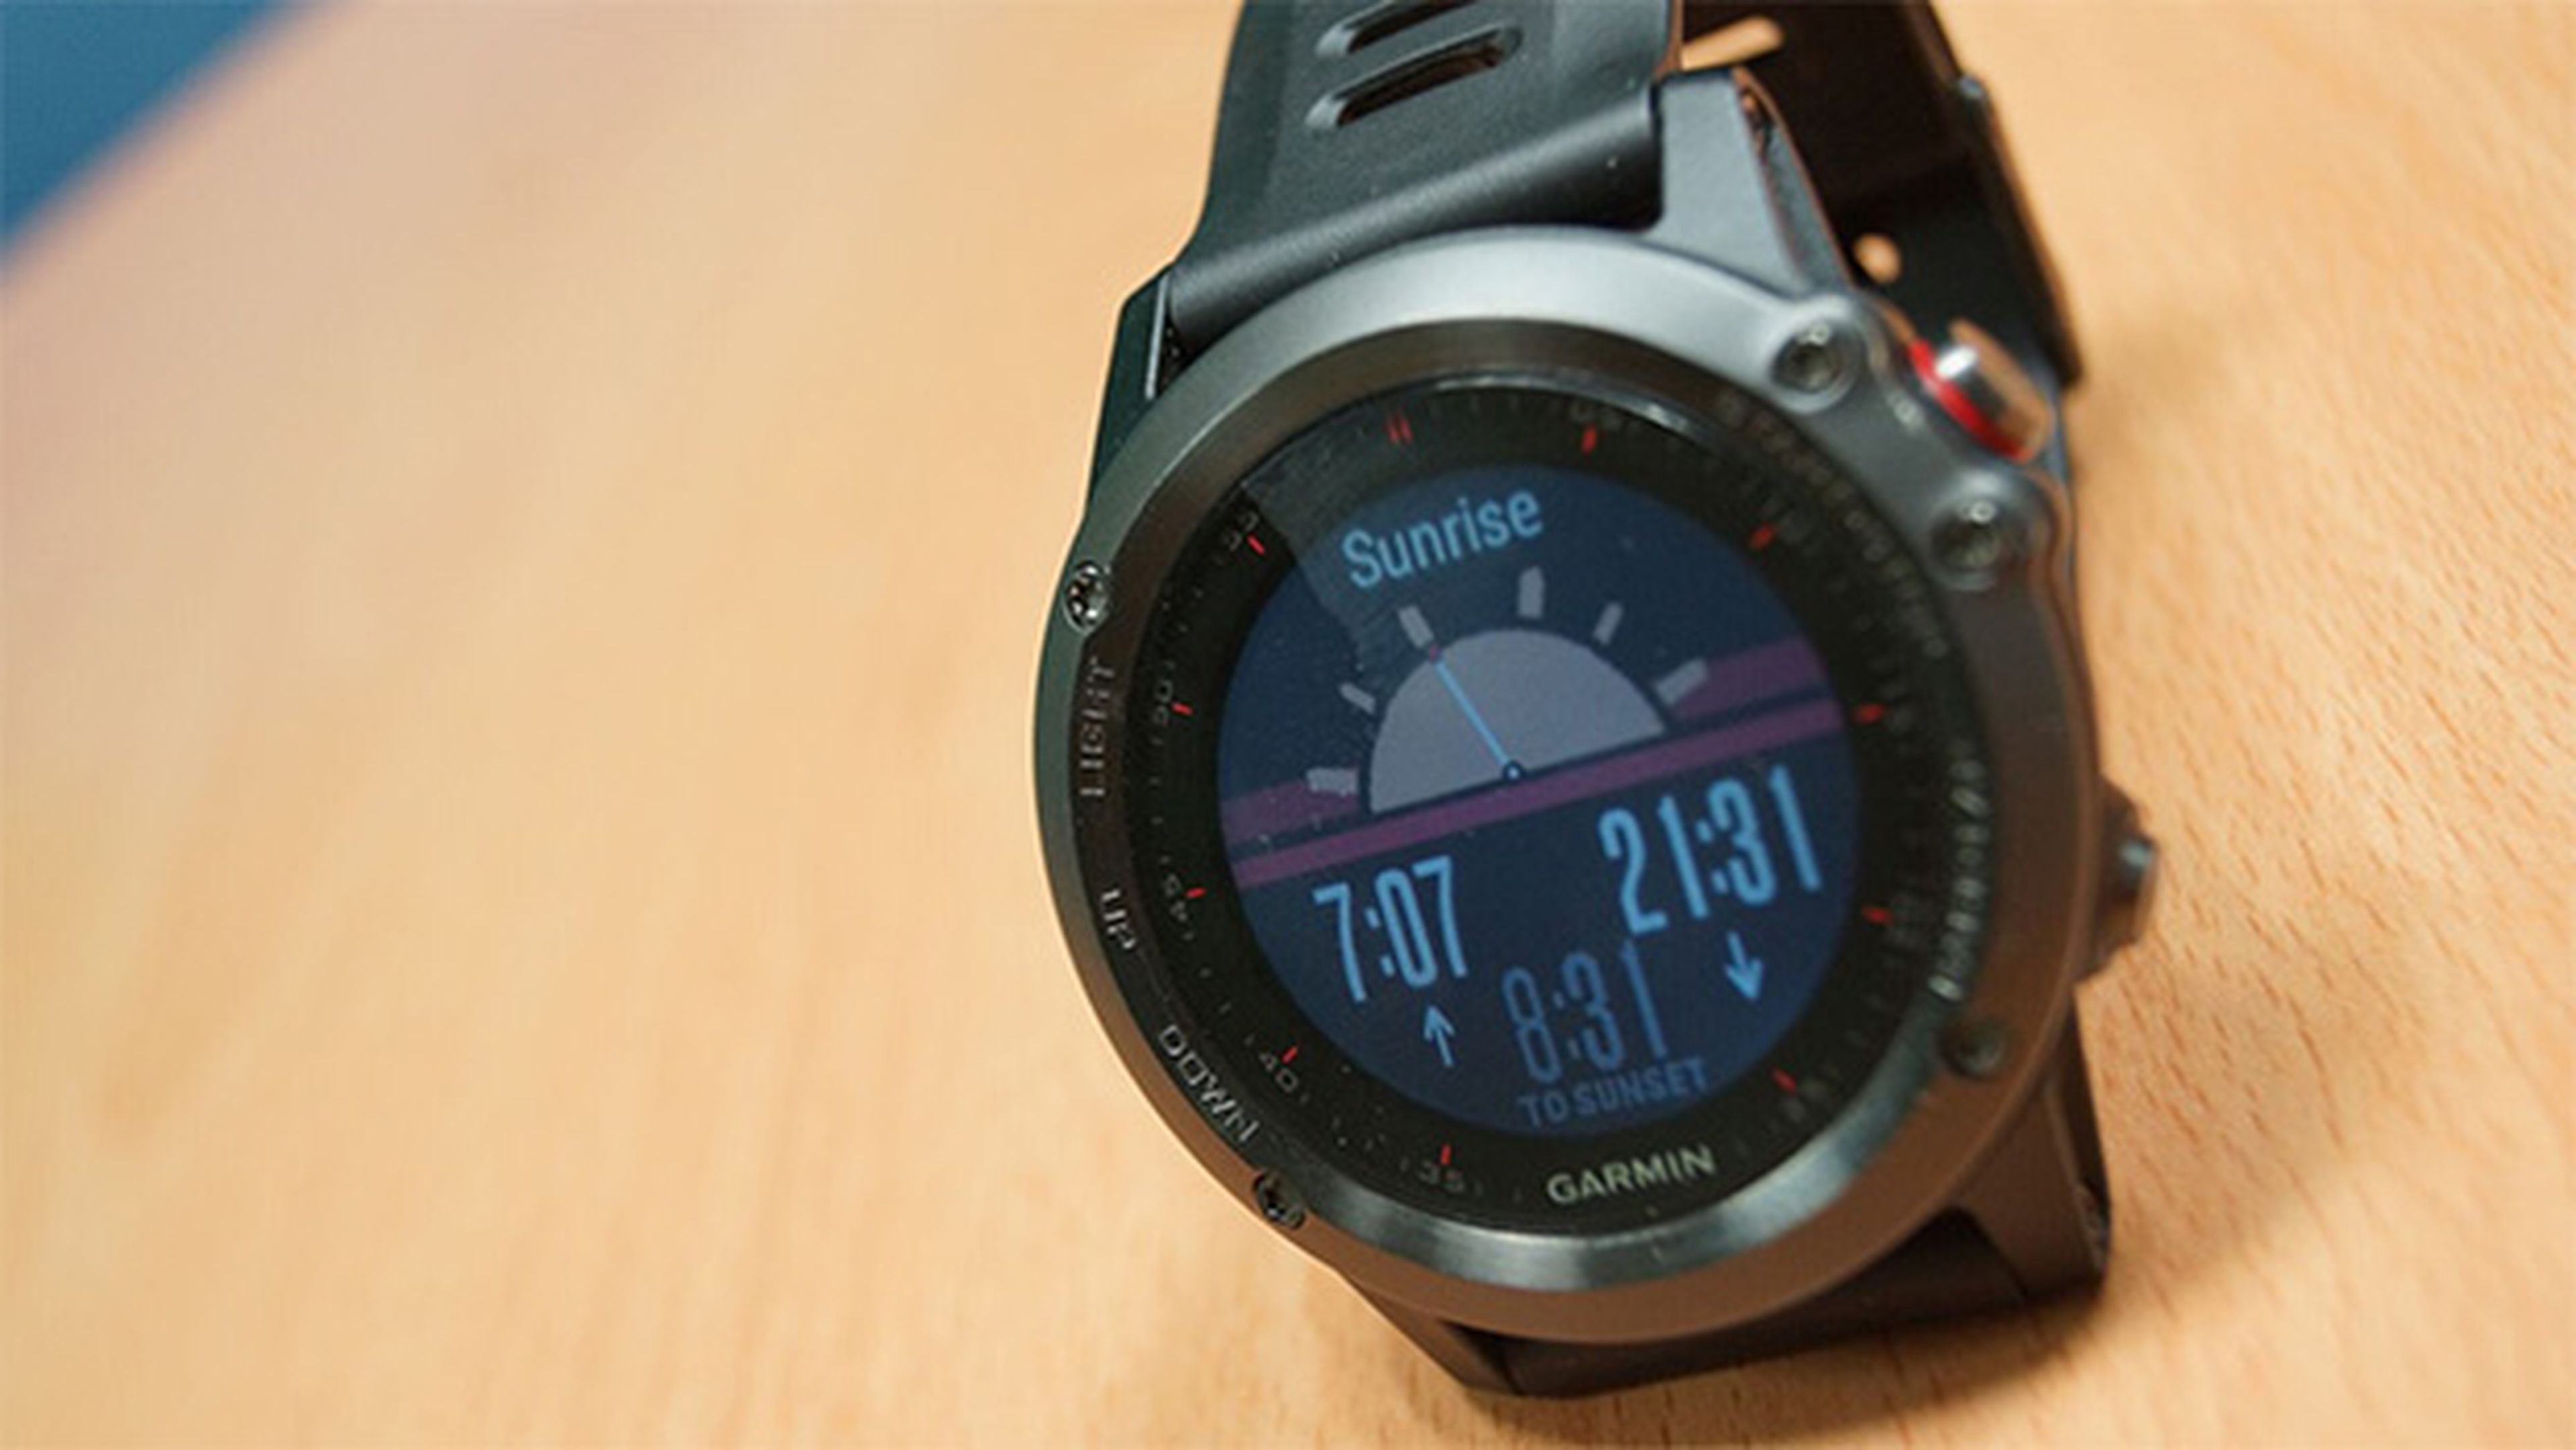 Garmin Fénix 3, análisis completo del reloj deportivo GPS